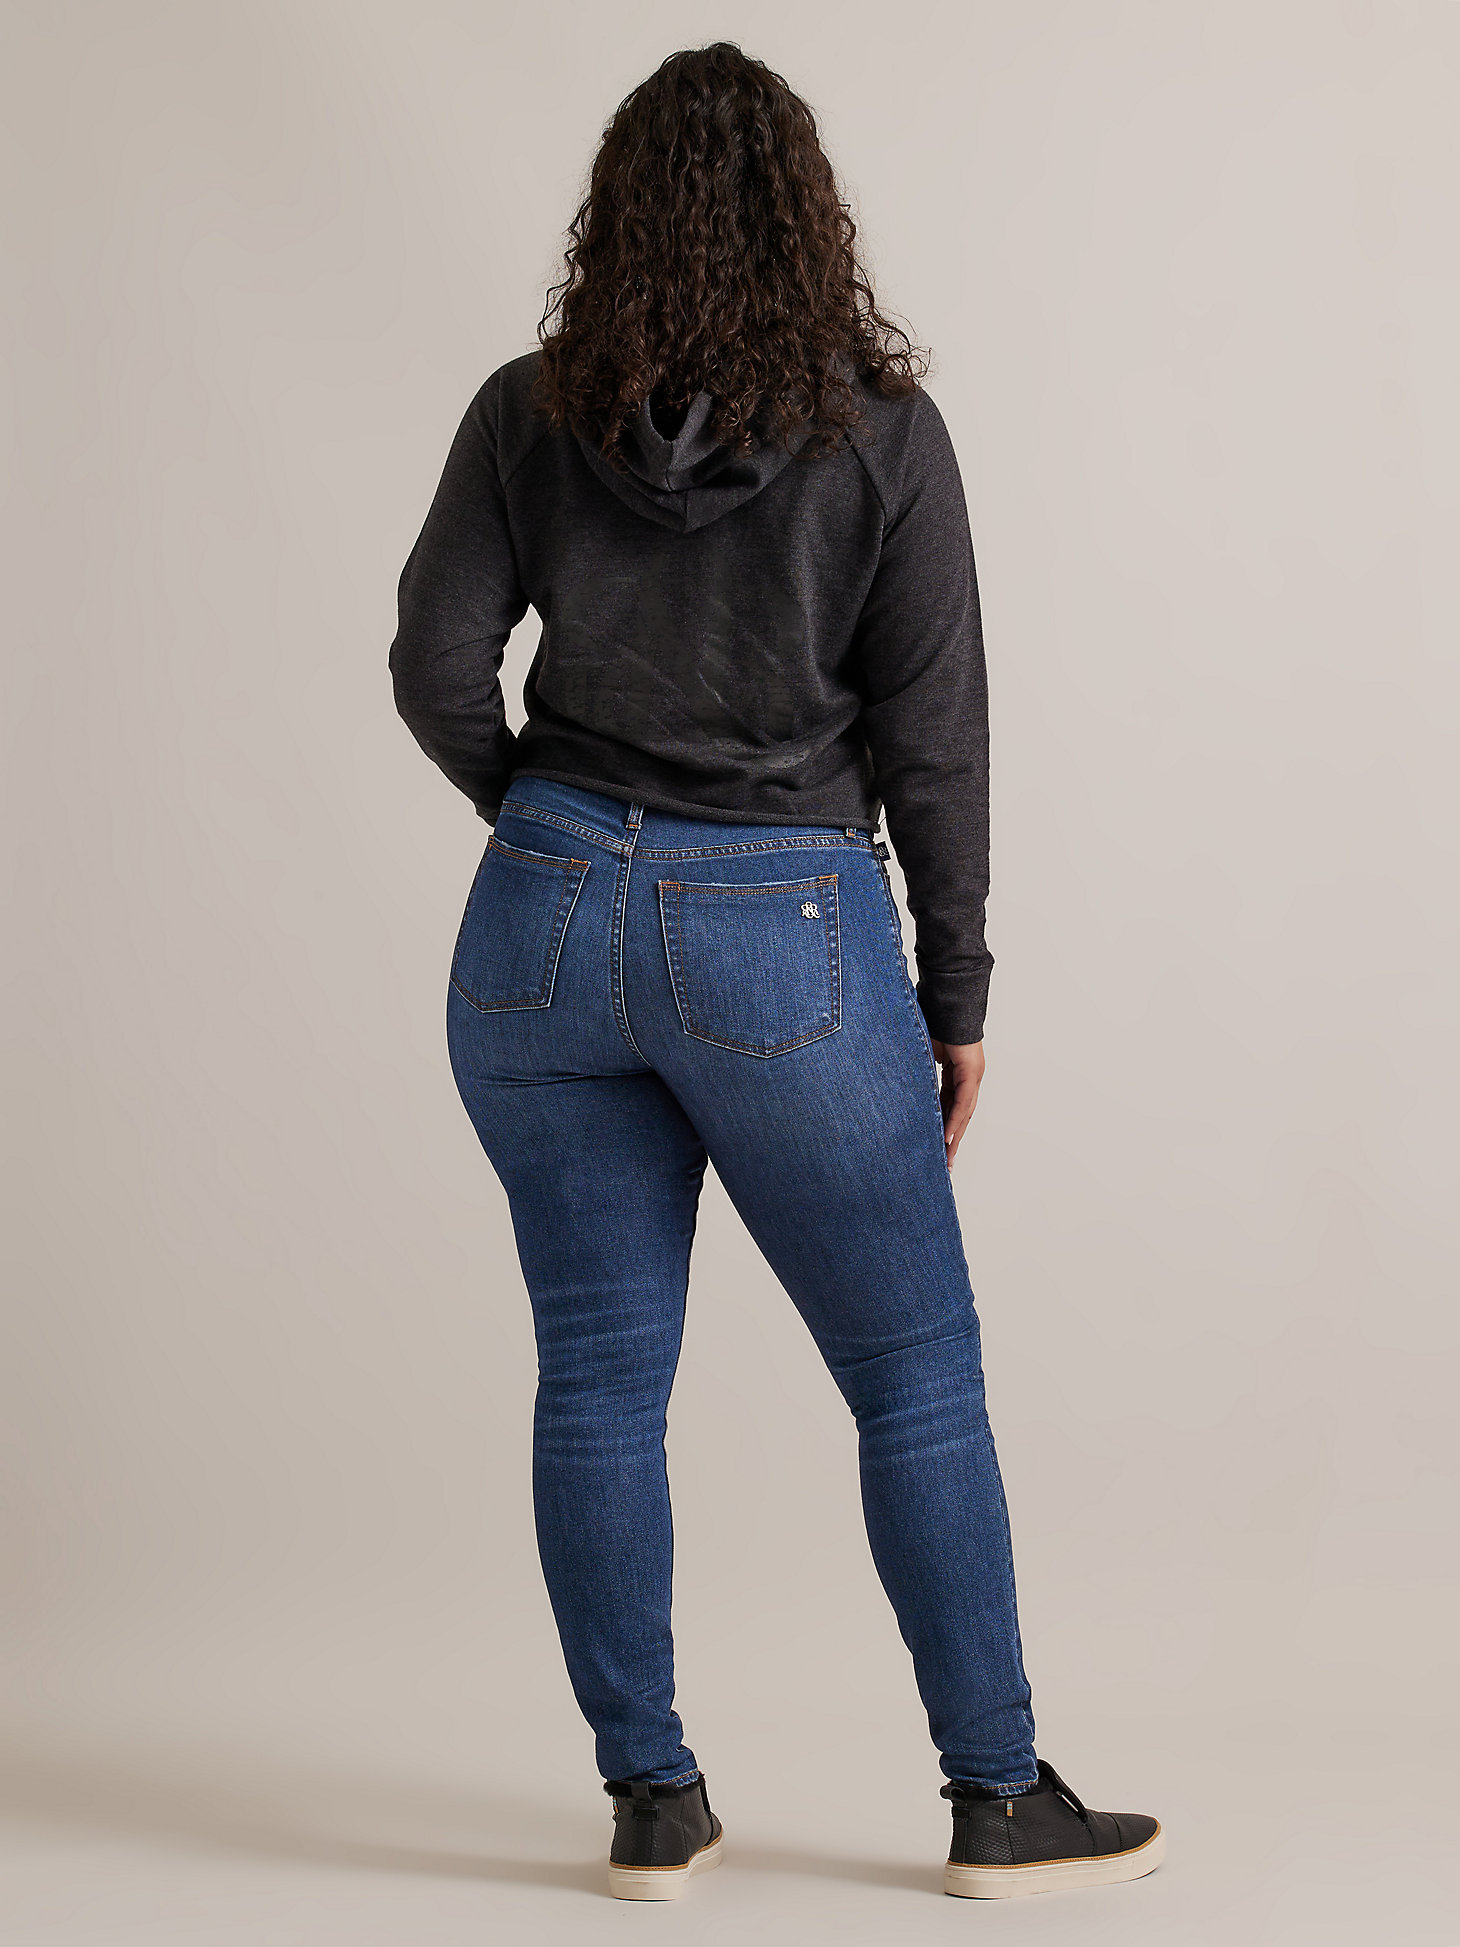 Women's High Roller High Rise Skinny Jean in In It Win It alternative view 4